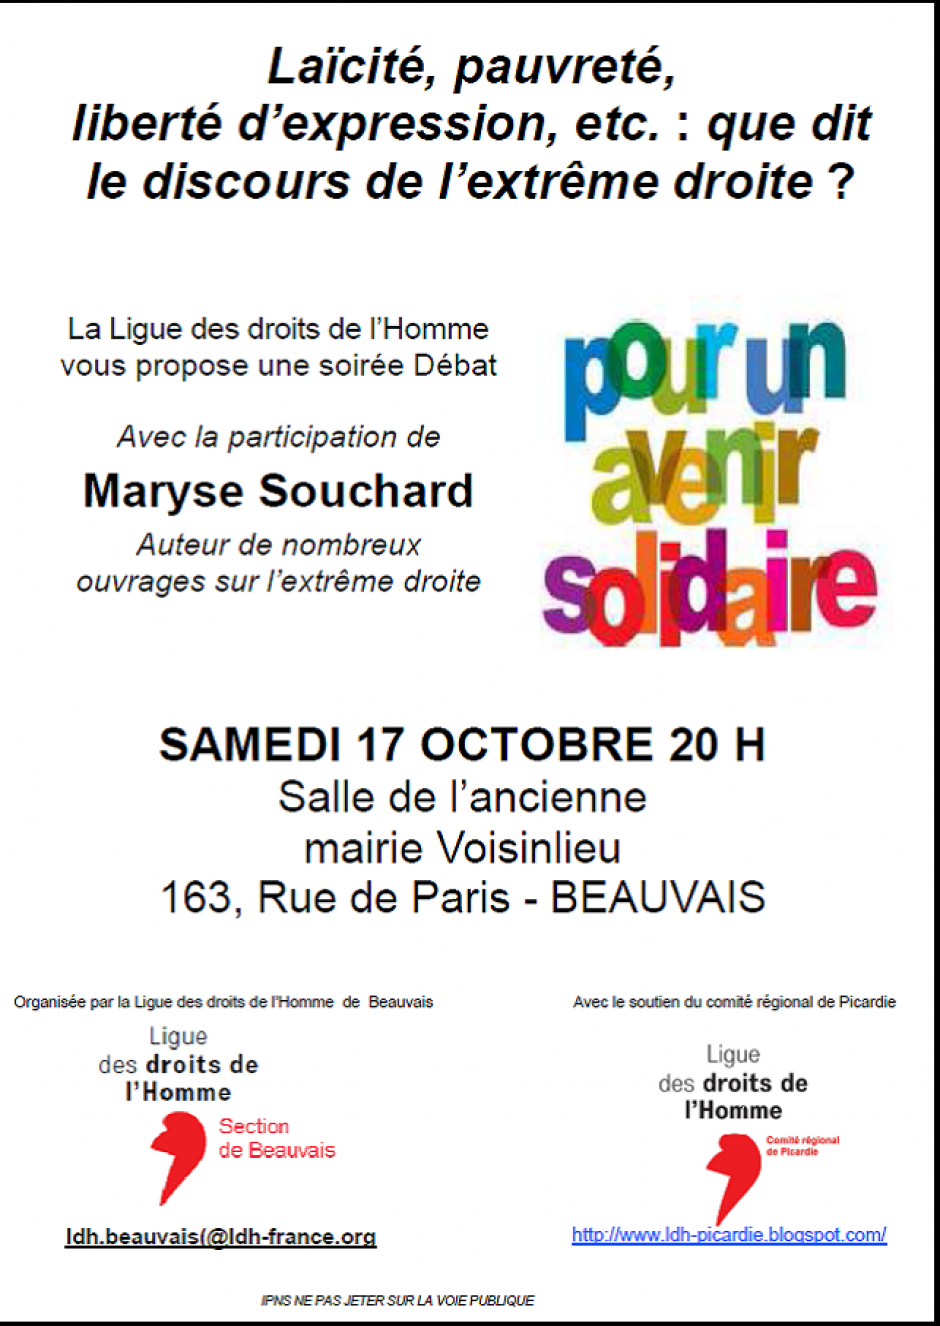 17 octobre, Beauvais-LDH Beauvais-Soirée-débat « Laïcité, pauvreté, liberté d'expression, etc. : que dit le discours de l'extrême droite ? », avec Maryse Souchard